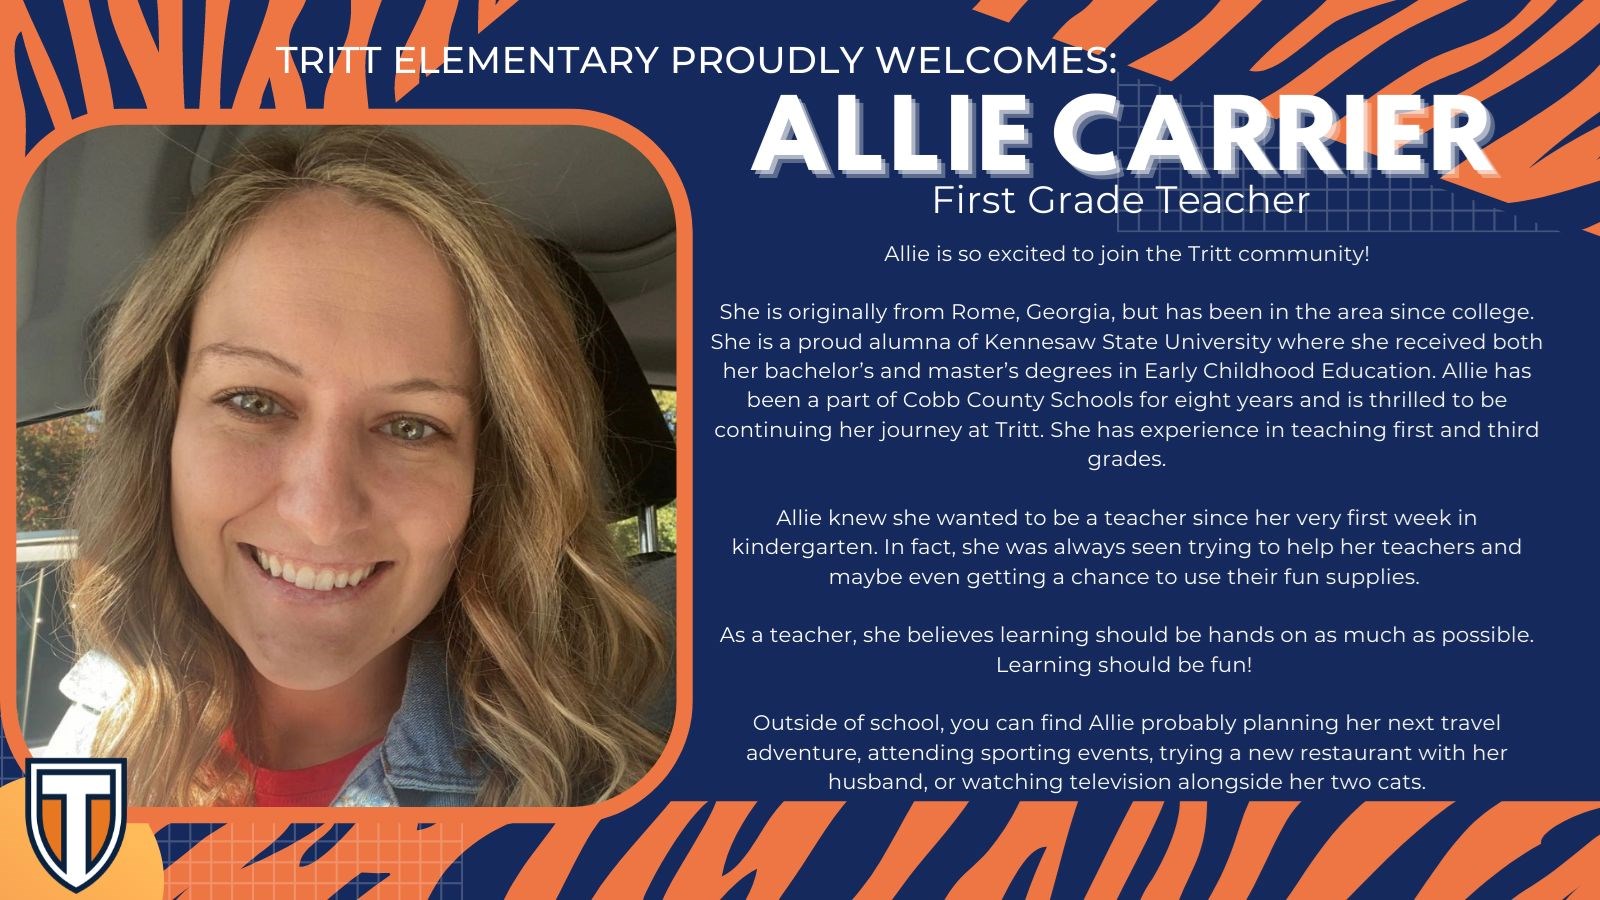 Allie Carrier First Grade Teacher